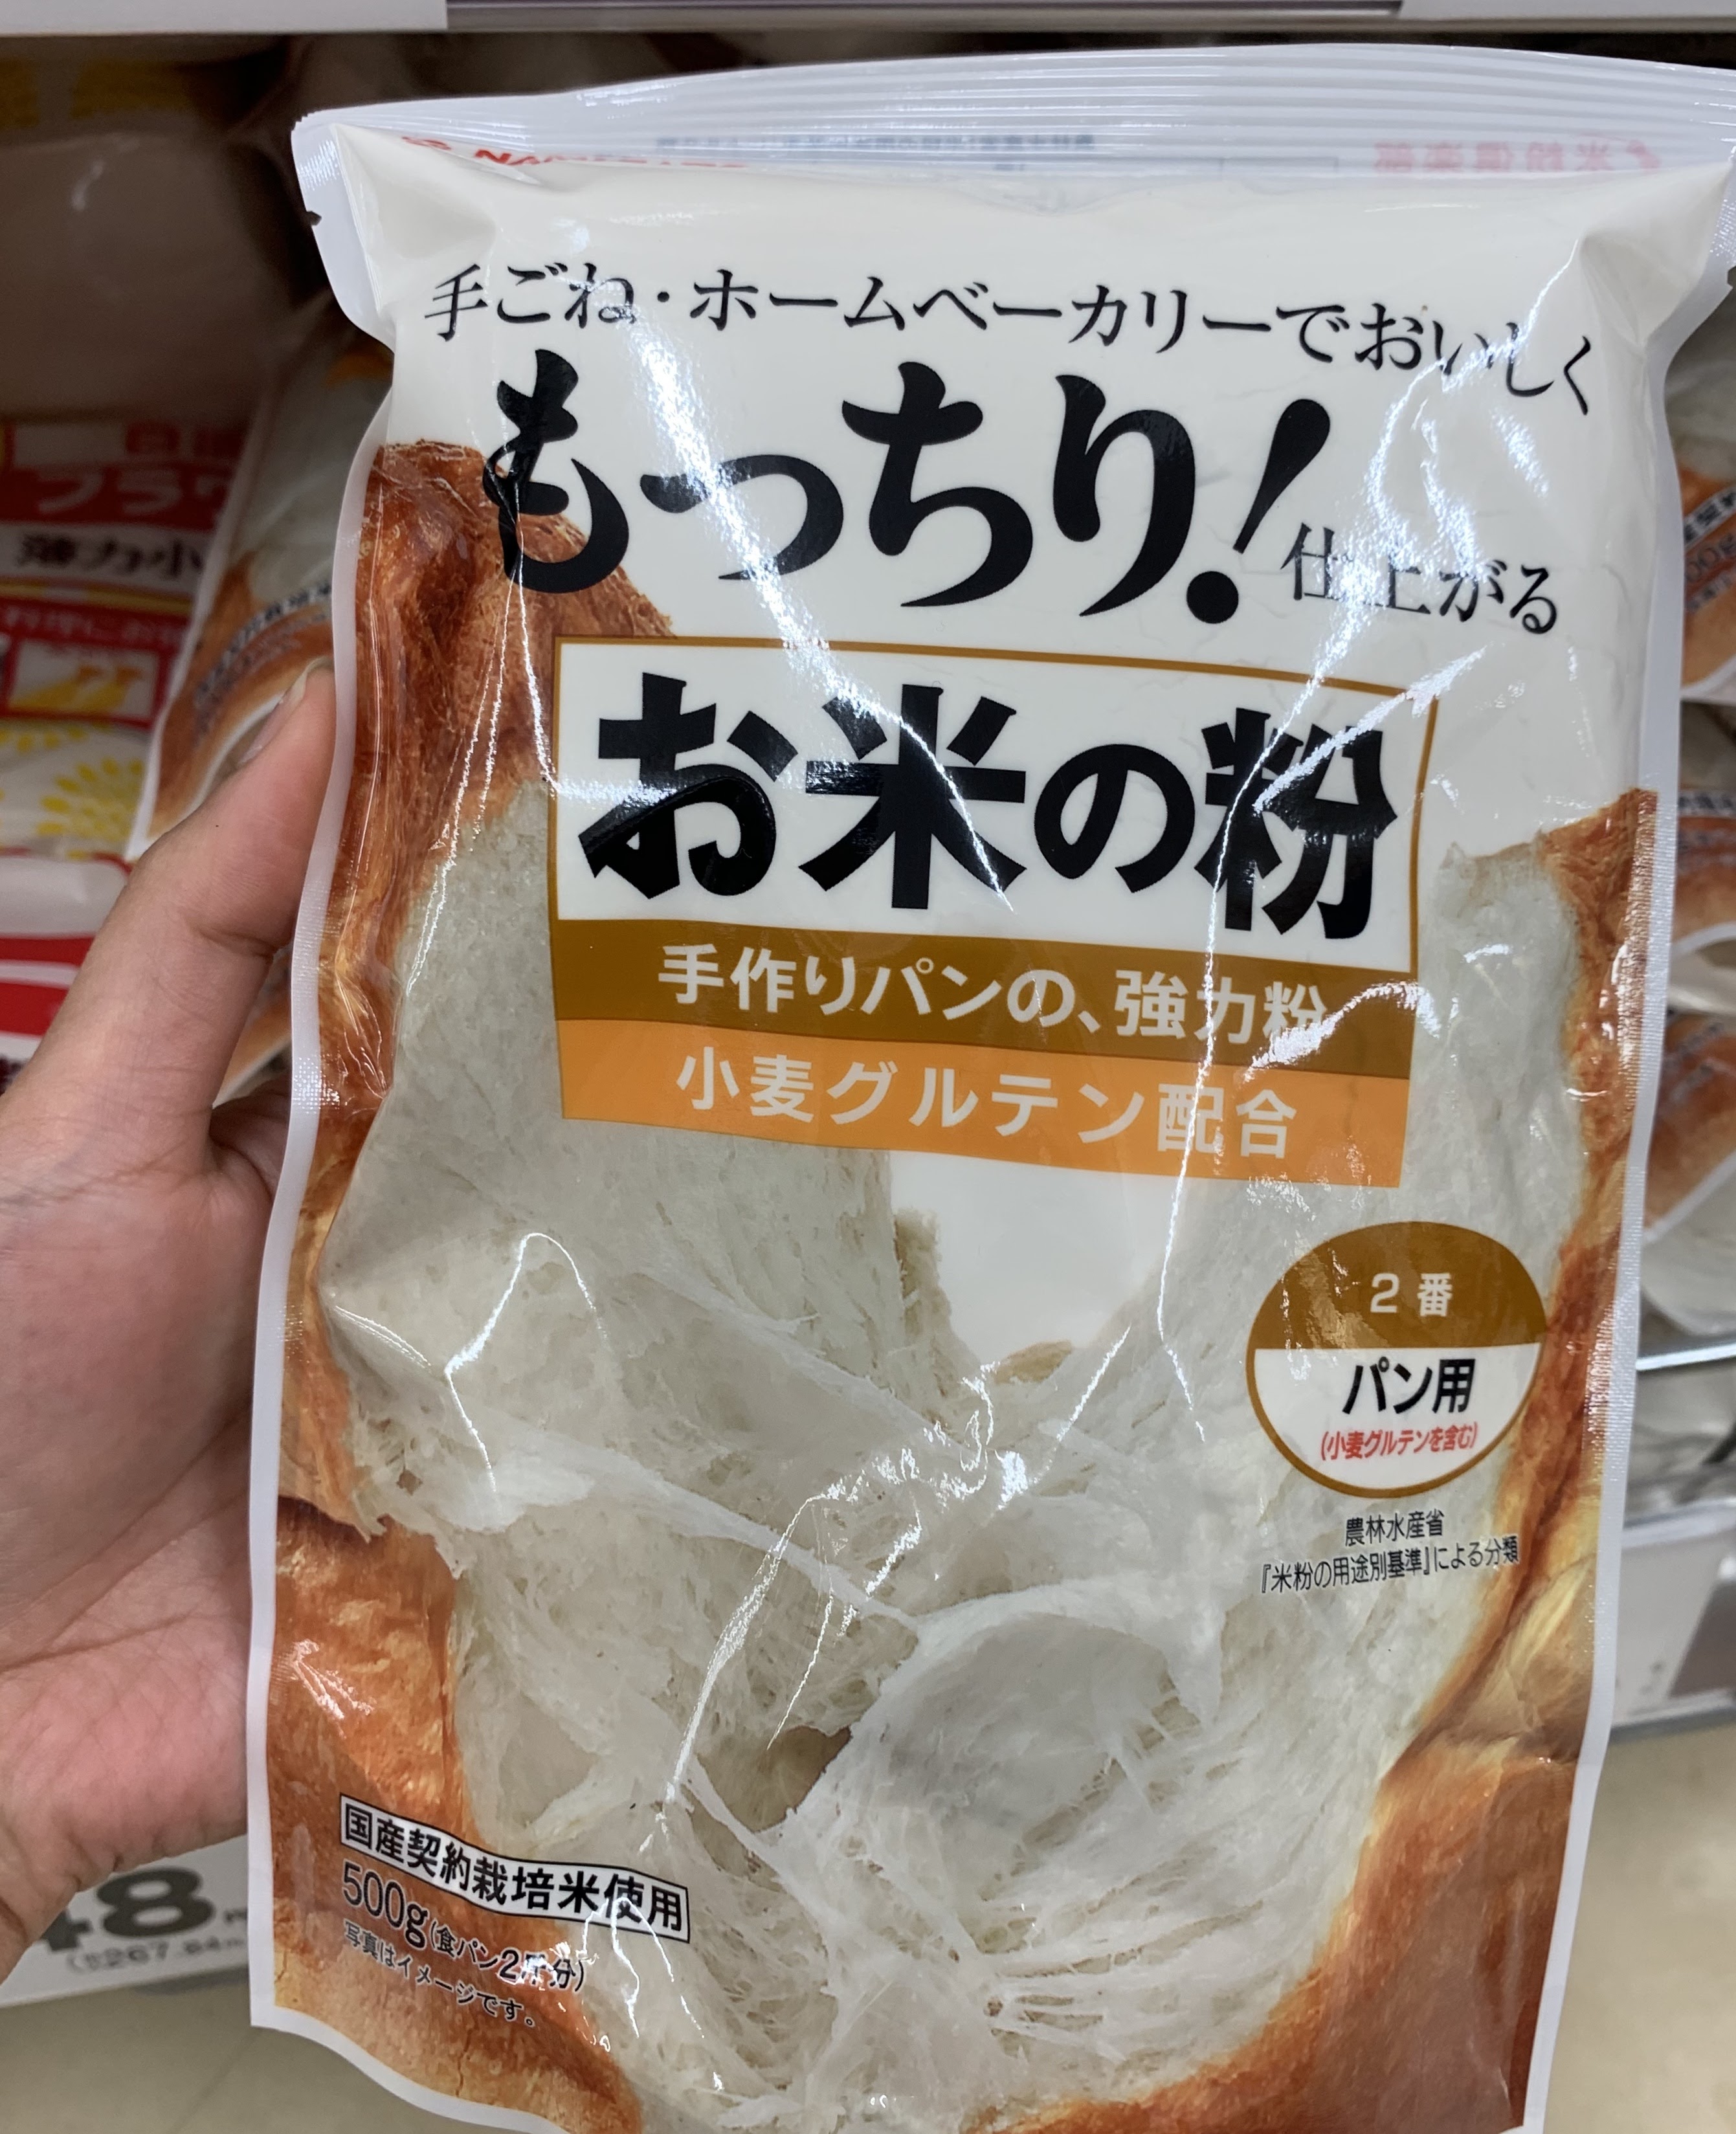 japanese bread flour